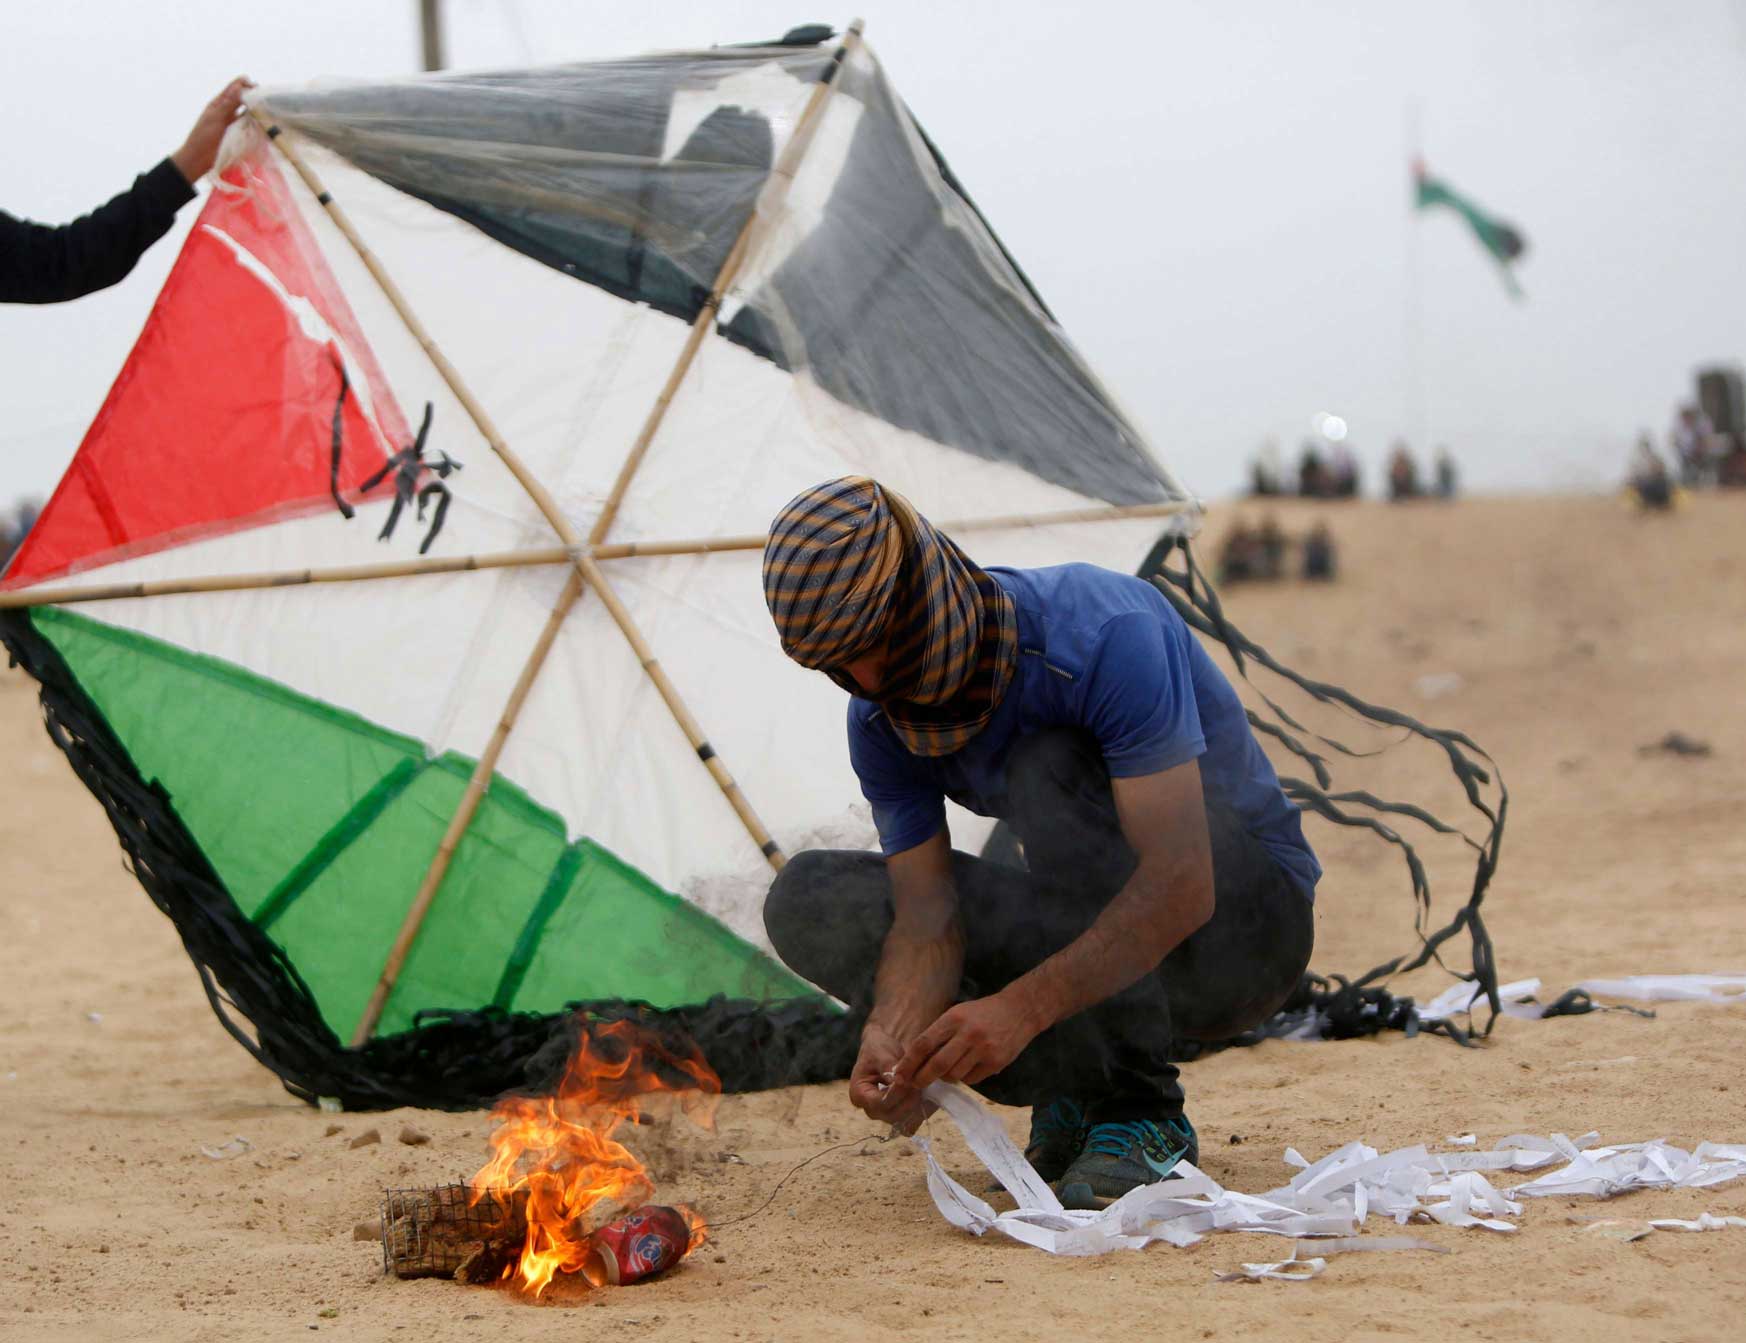 فلسطيني يجهز طائرة مشتعلة قبل قبل محاولة ارسالها الى ما بعد السياج الحدودي مع إسرائيل